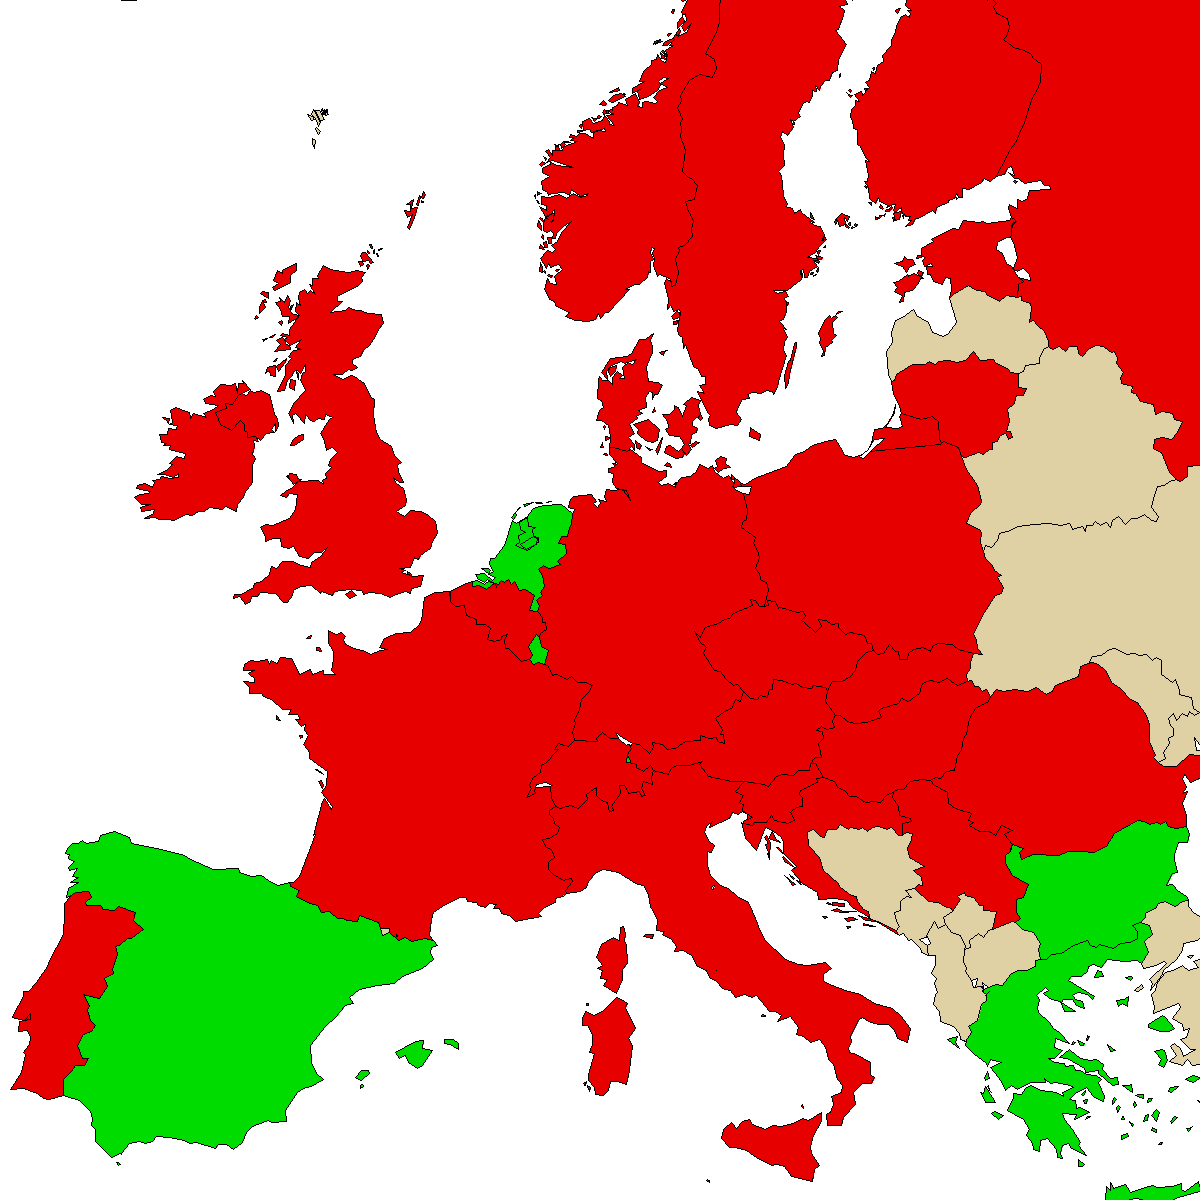 carte d'information légale pour notre produit 3MMC, vert sont des pays sans interdiction, rouge avec interdiction, gris inconnu